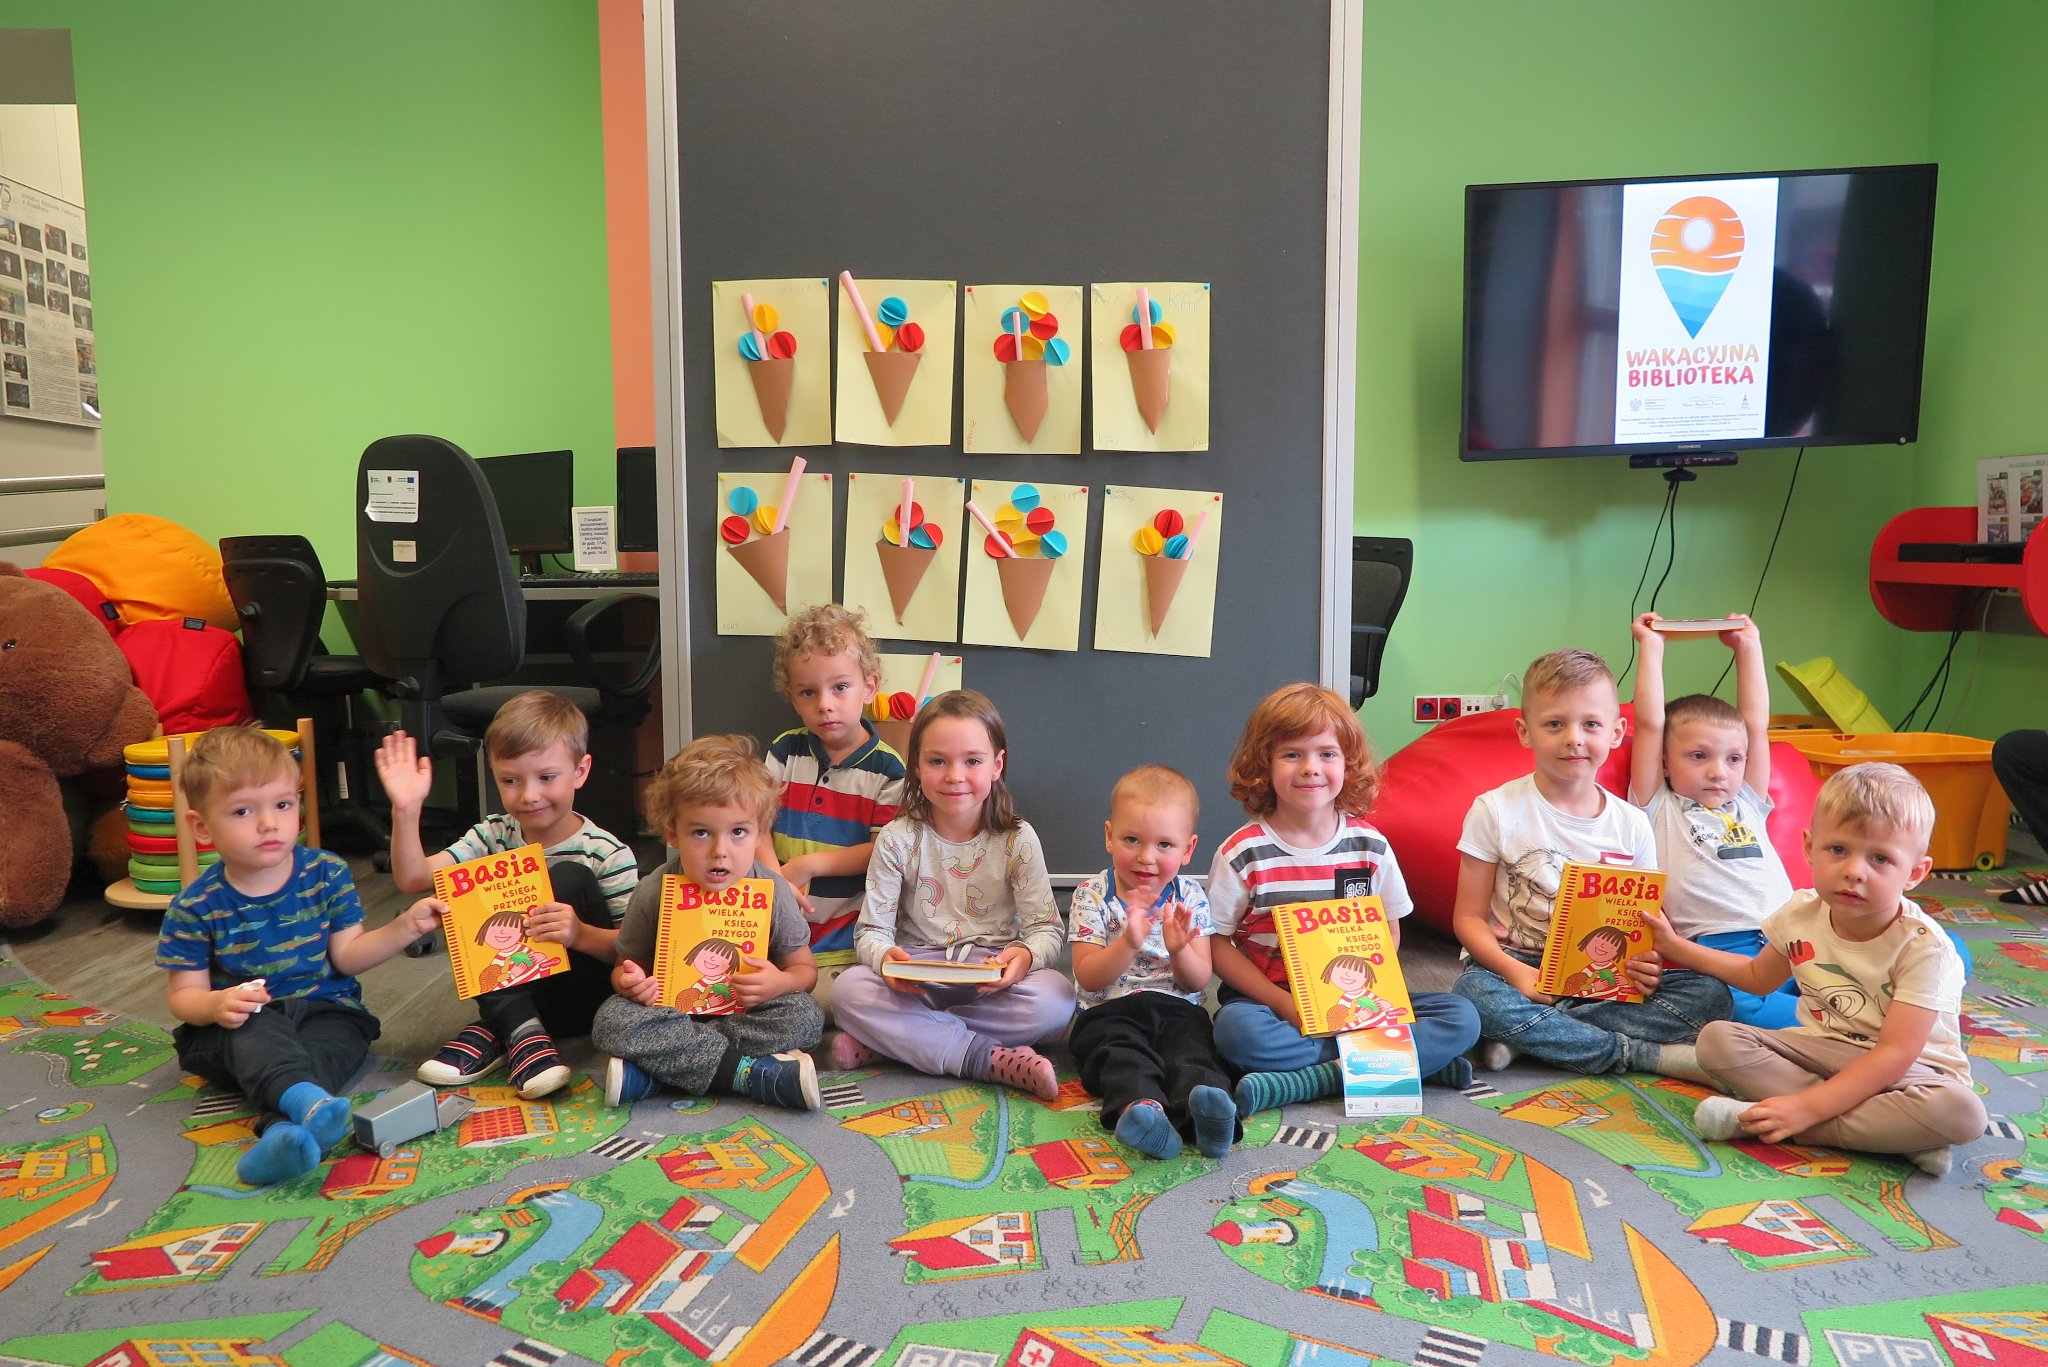 zdjęcie grupowe dzieci siedzących na podłodze w oddziale dla dzieci, część z nich trzyma w rękach książki